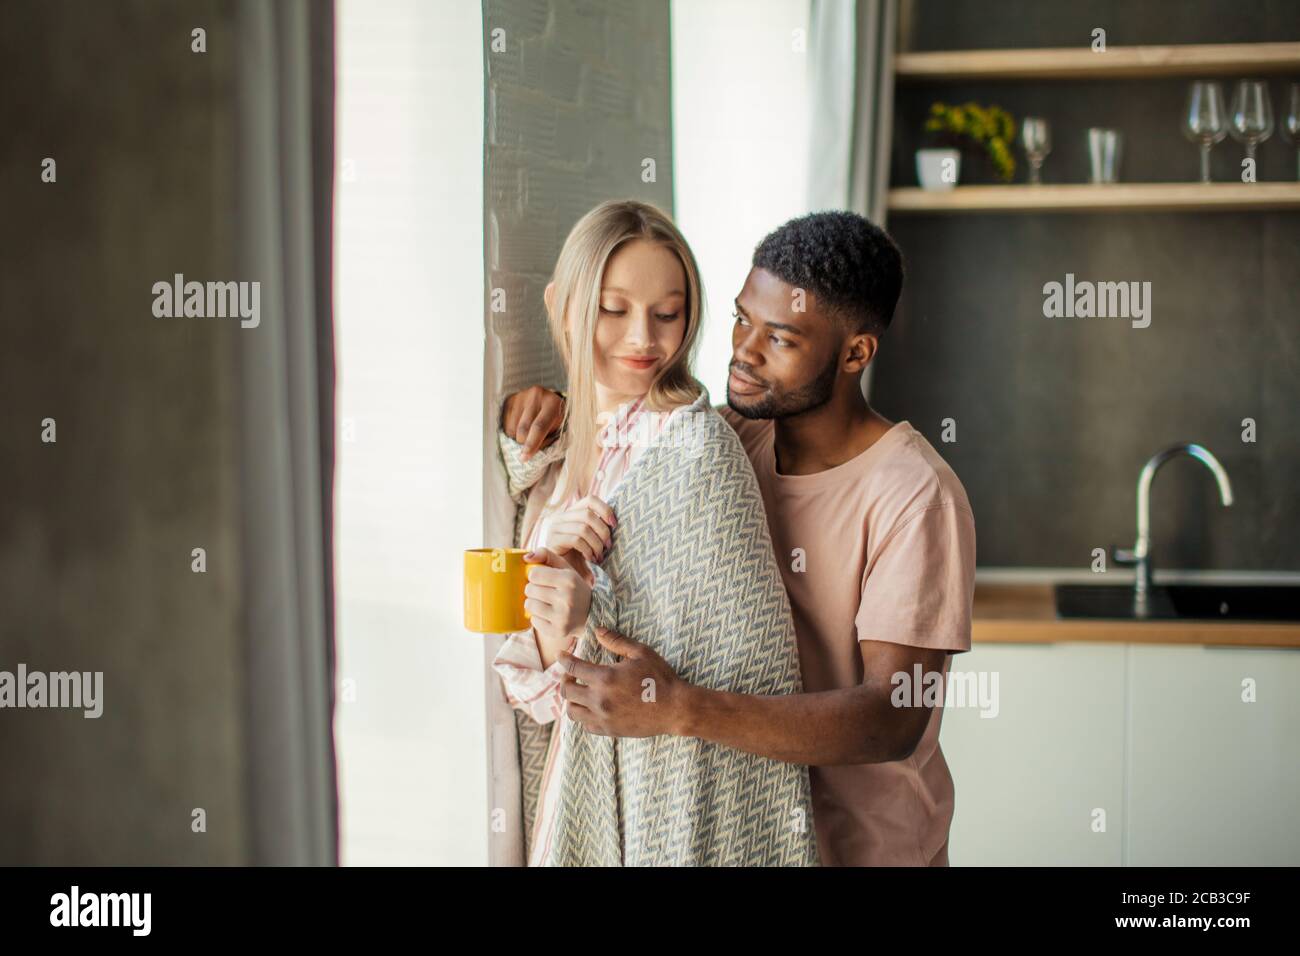 Bel ragazzo africano di baciare la sua ragazza caucasica sul collo dal retro, in piedi a casa in cucina camera con arredamento moderno Foto Stock